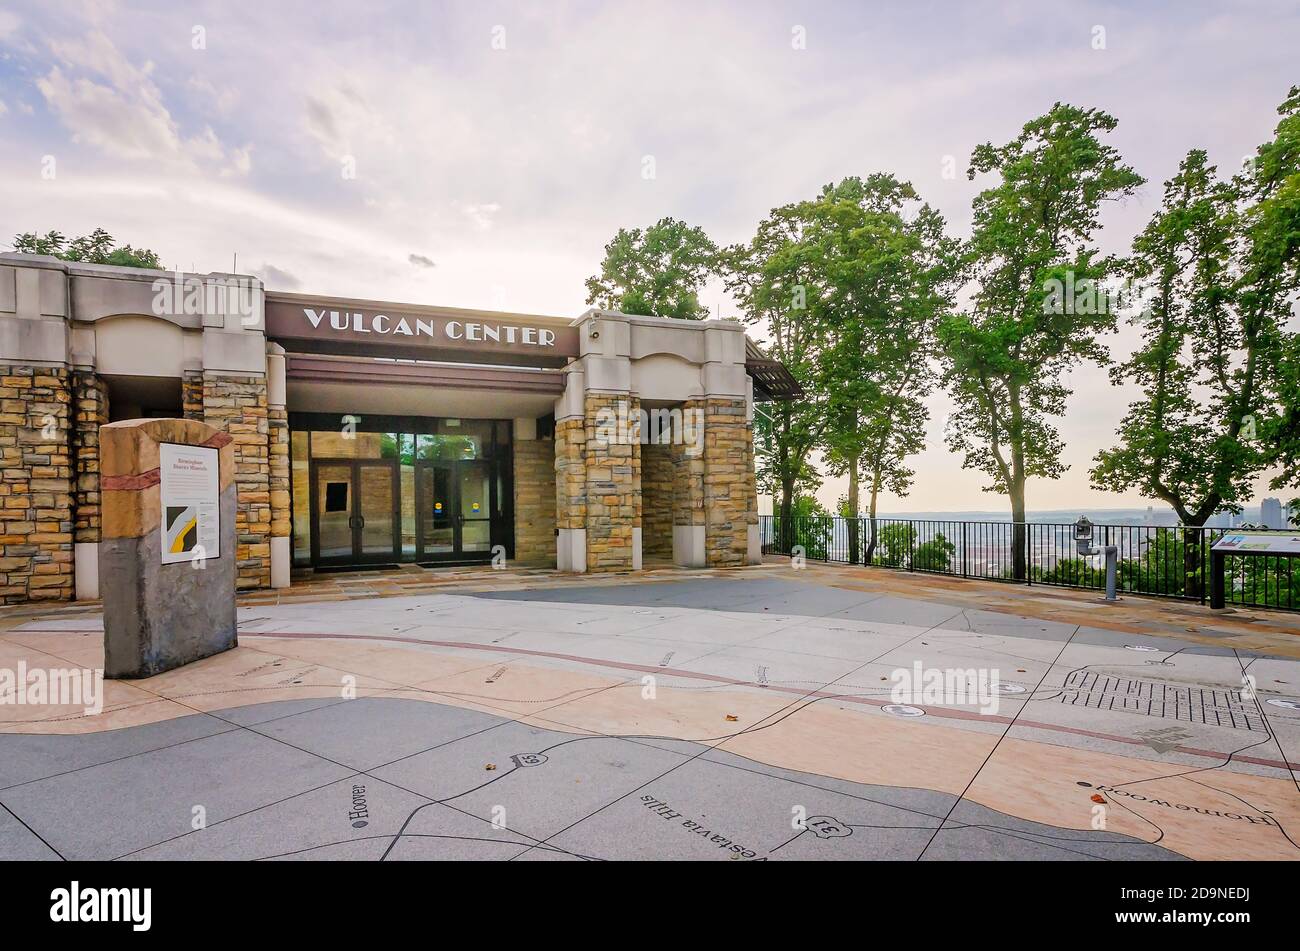 L'entrée du Vulcan Centre est illustrée au parc Vulcan, le 19 juillet 2015, à Birmingham, Alabama. Le parc comprend une statue de Vulcan en fer. Banque D'Images